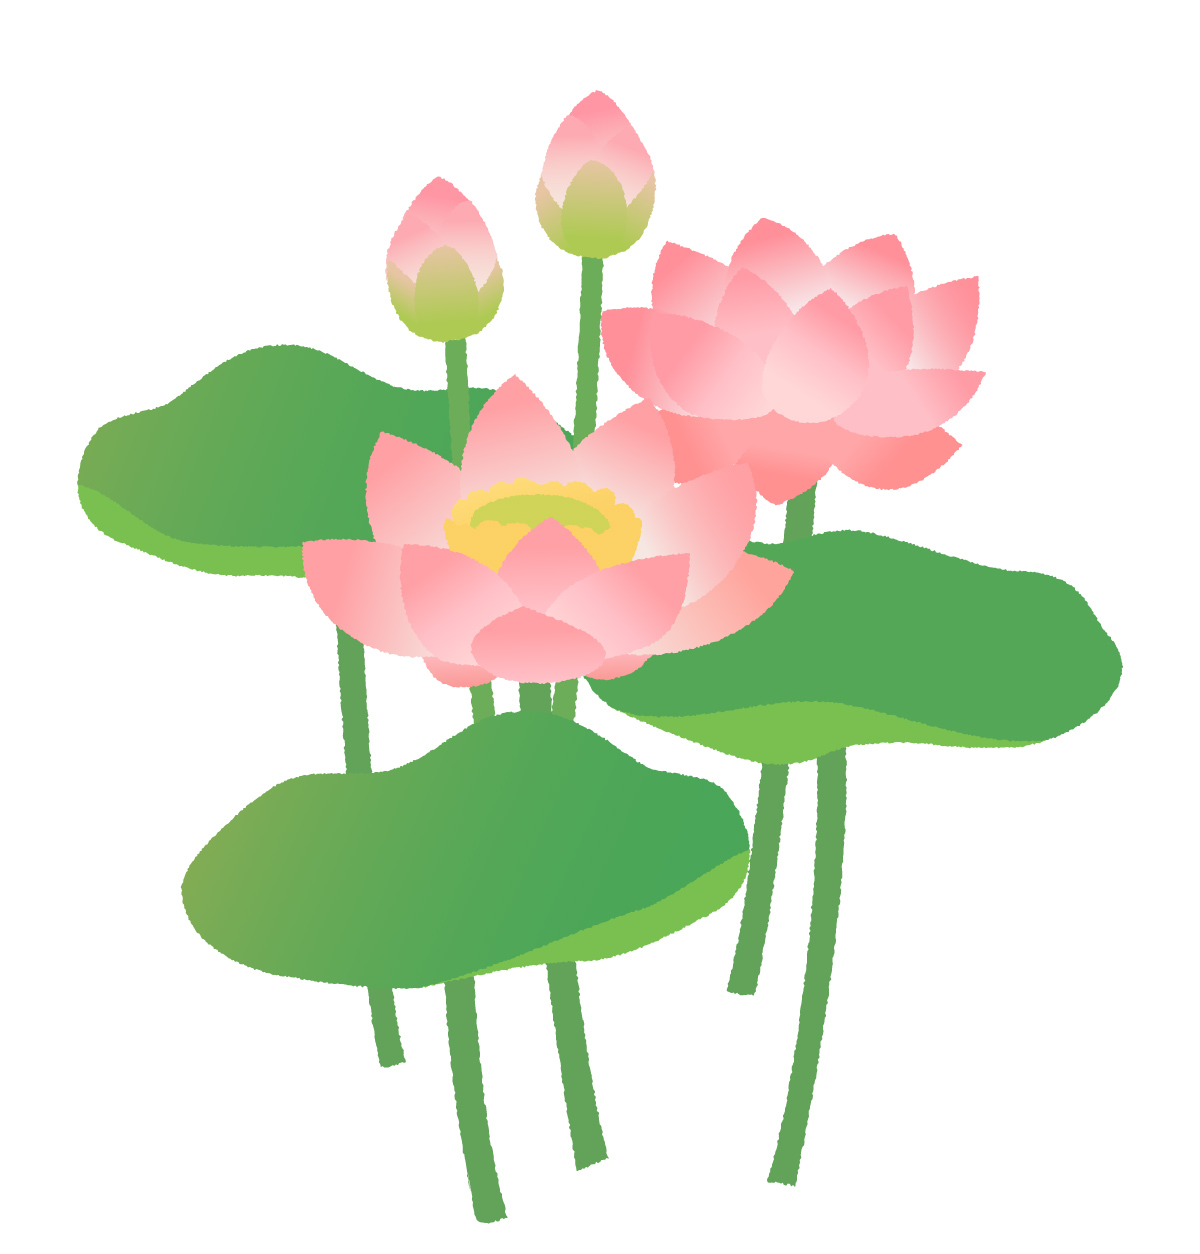 《6月20日》草津市の水生植物公園みずの森で「みなづきフェスタ」が開催！クイズラリーやワークショップを楽しもう！草津市民入園無料☆